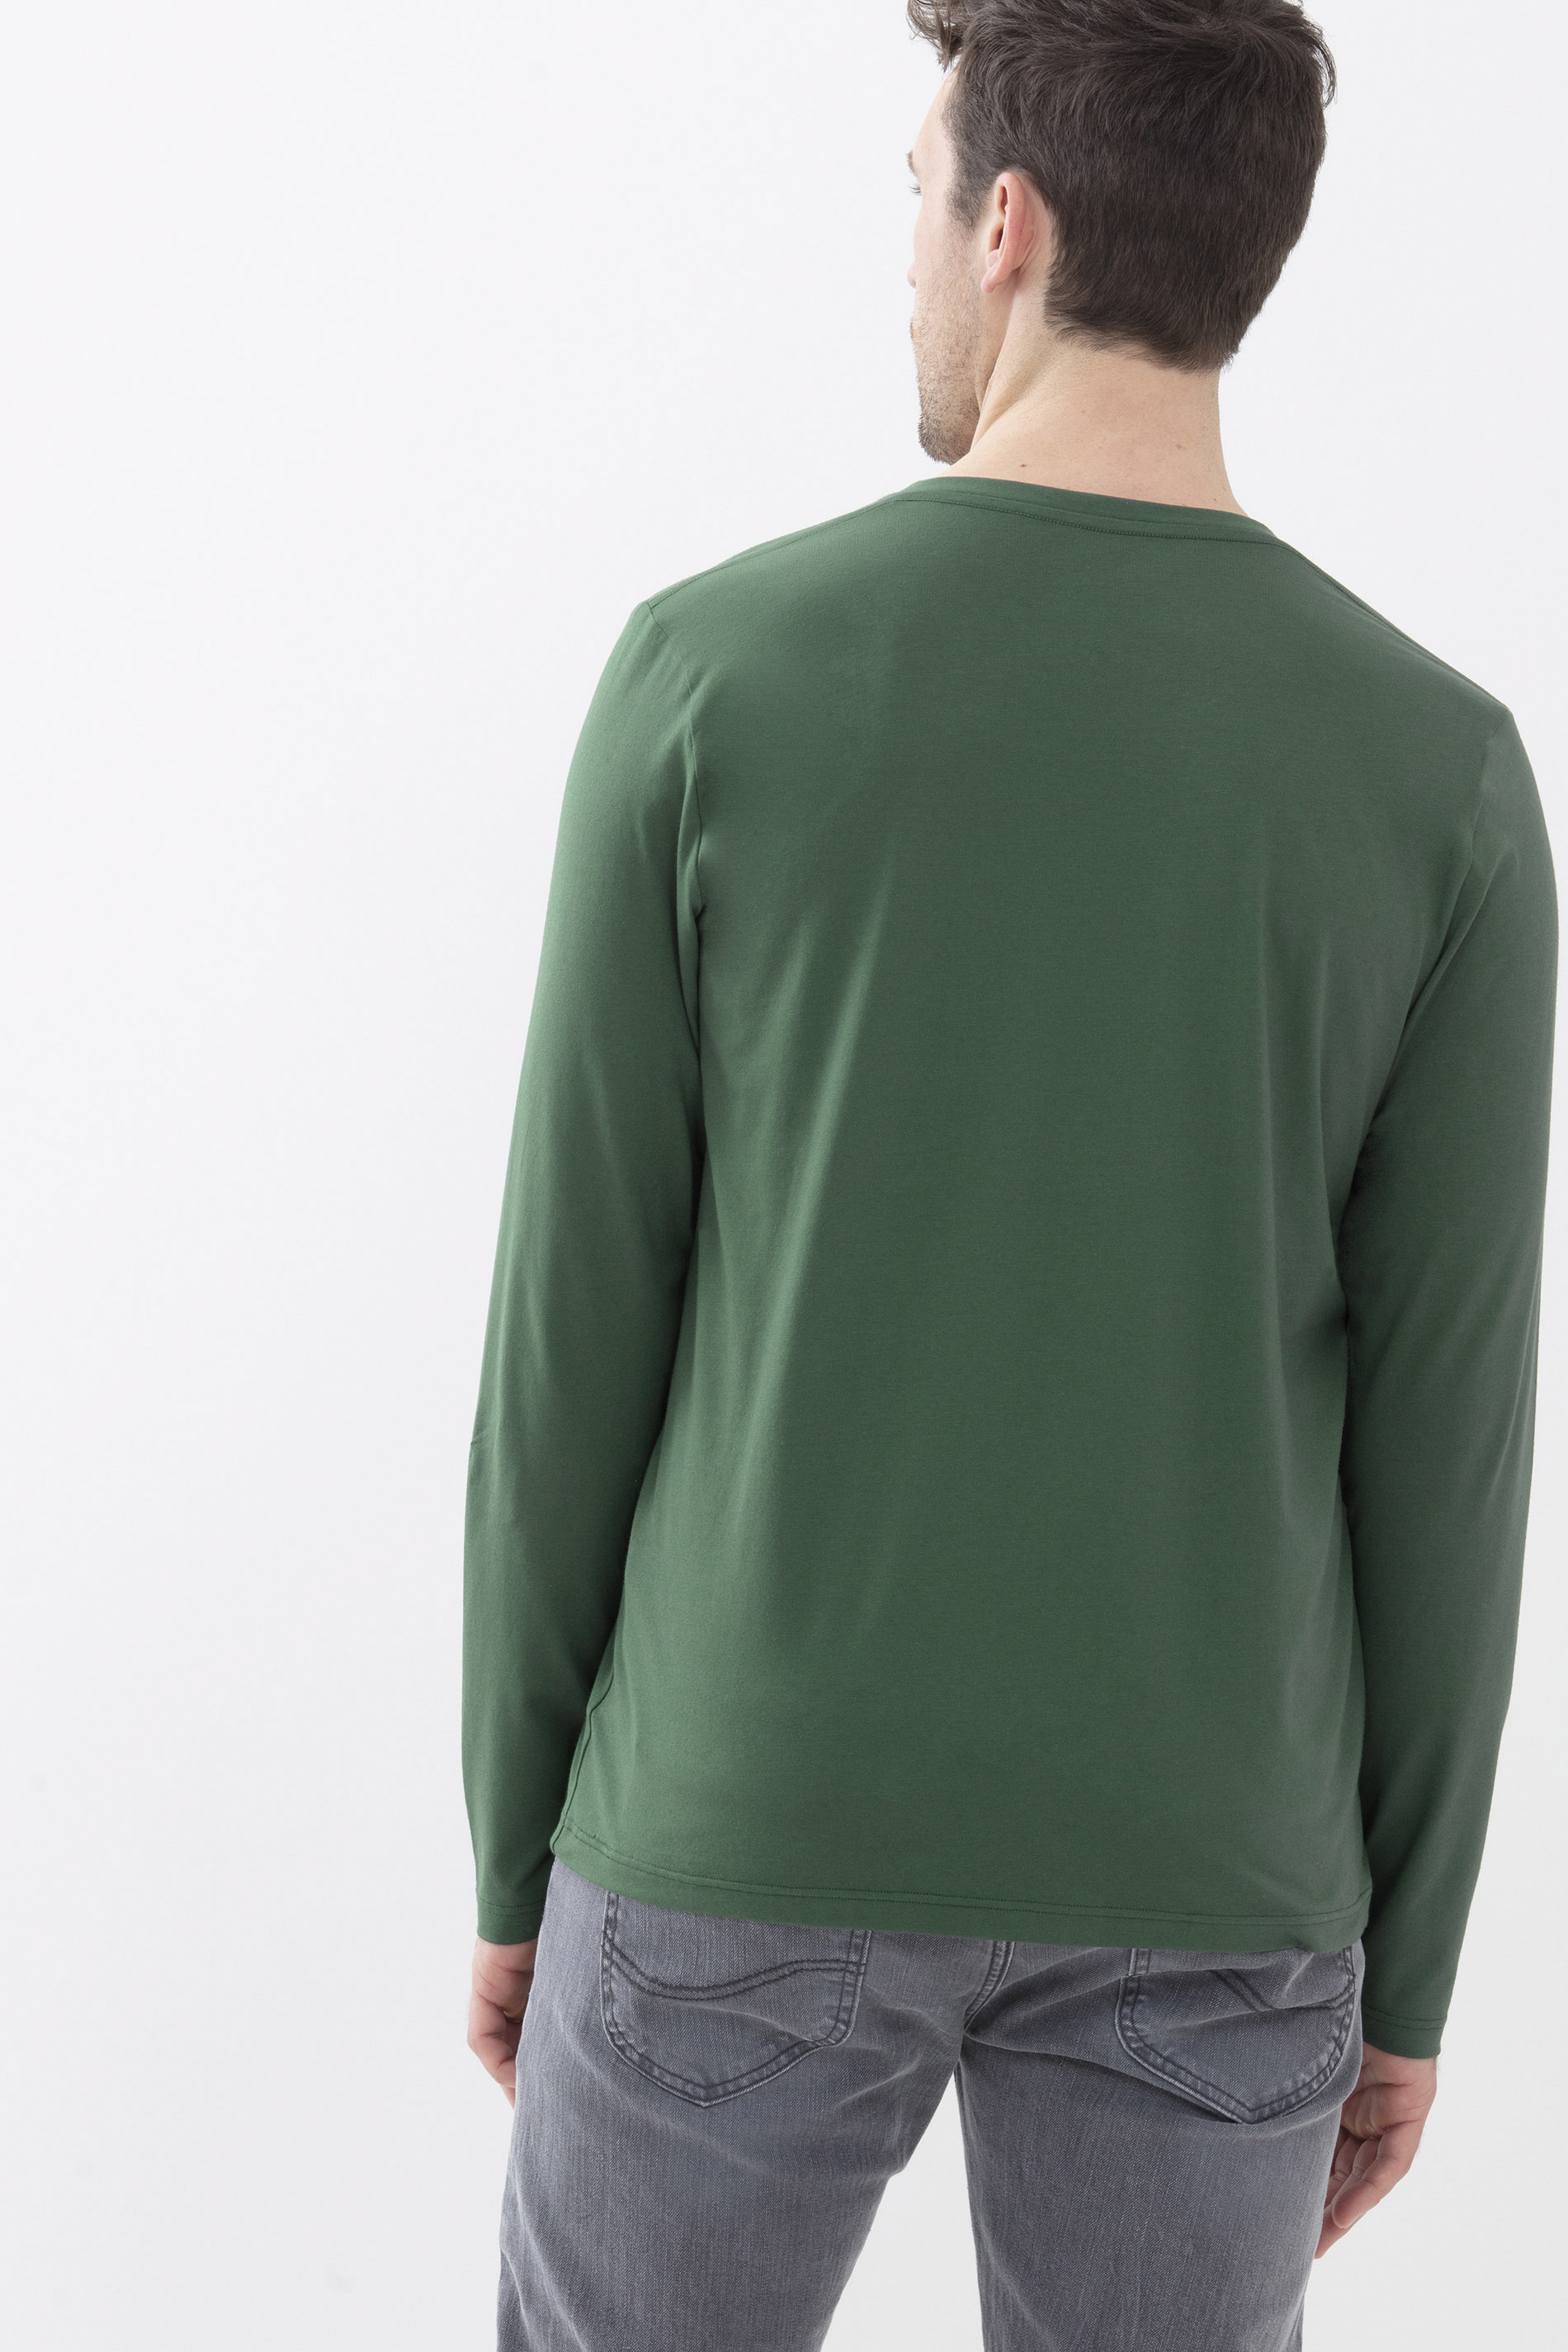 Langarm-Shirt Evergreen Dry Cotton Colour Rückansicht | mey®